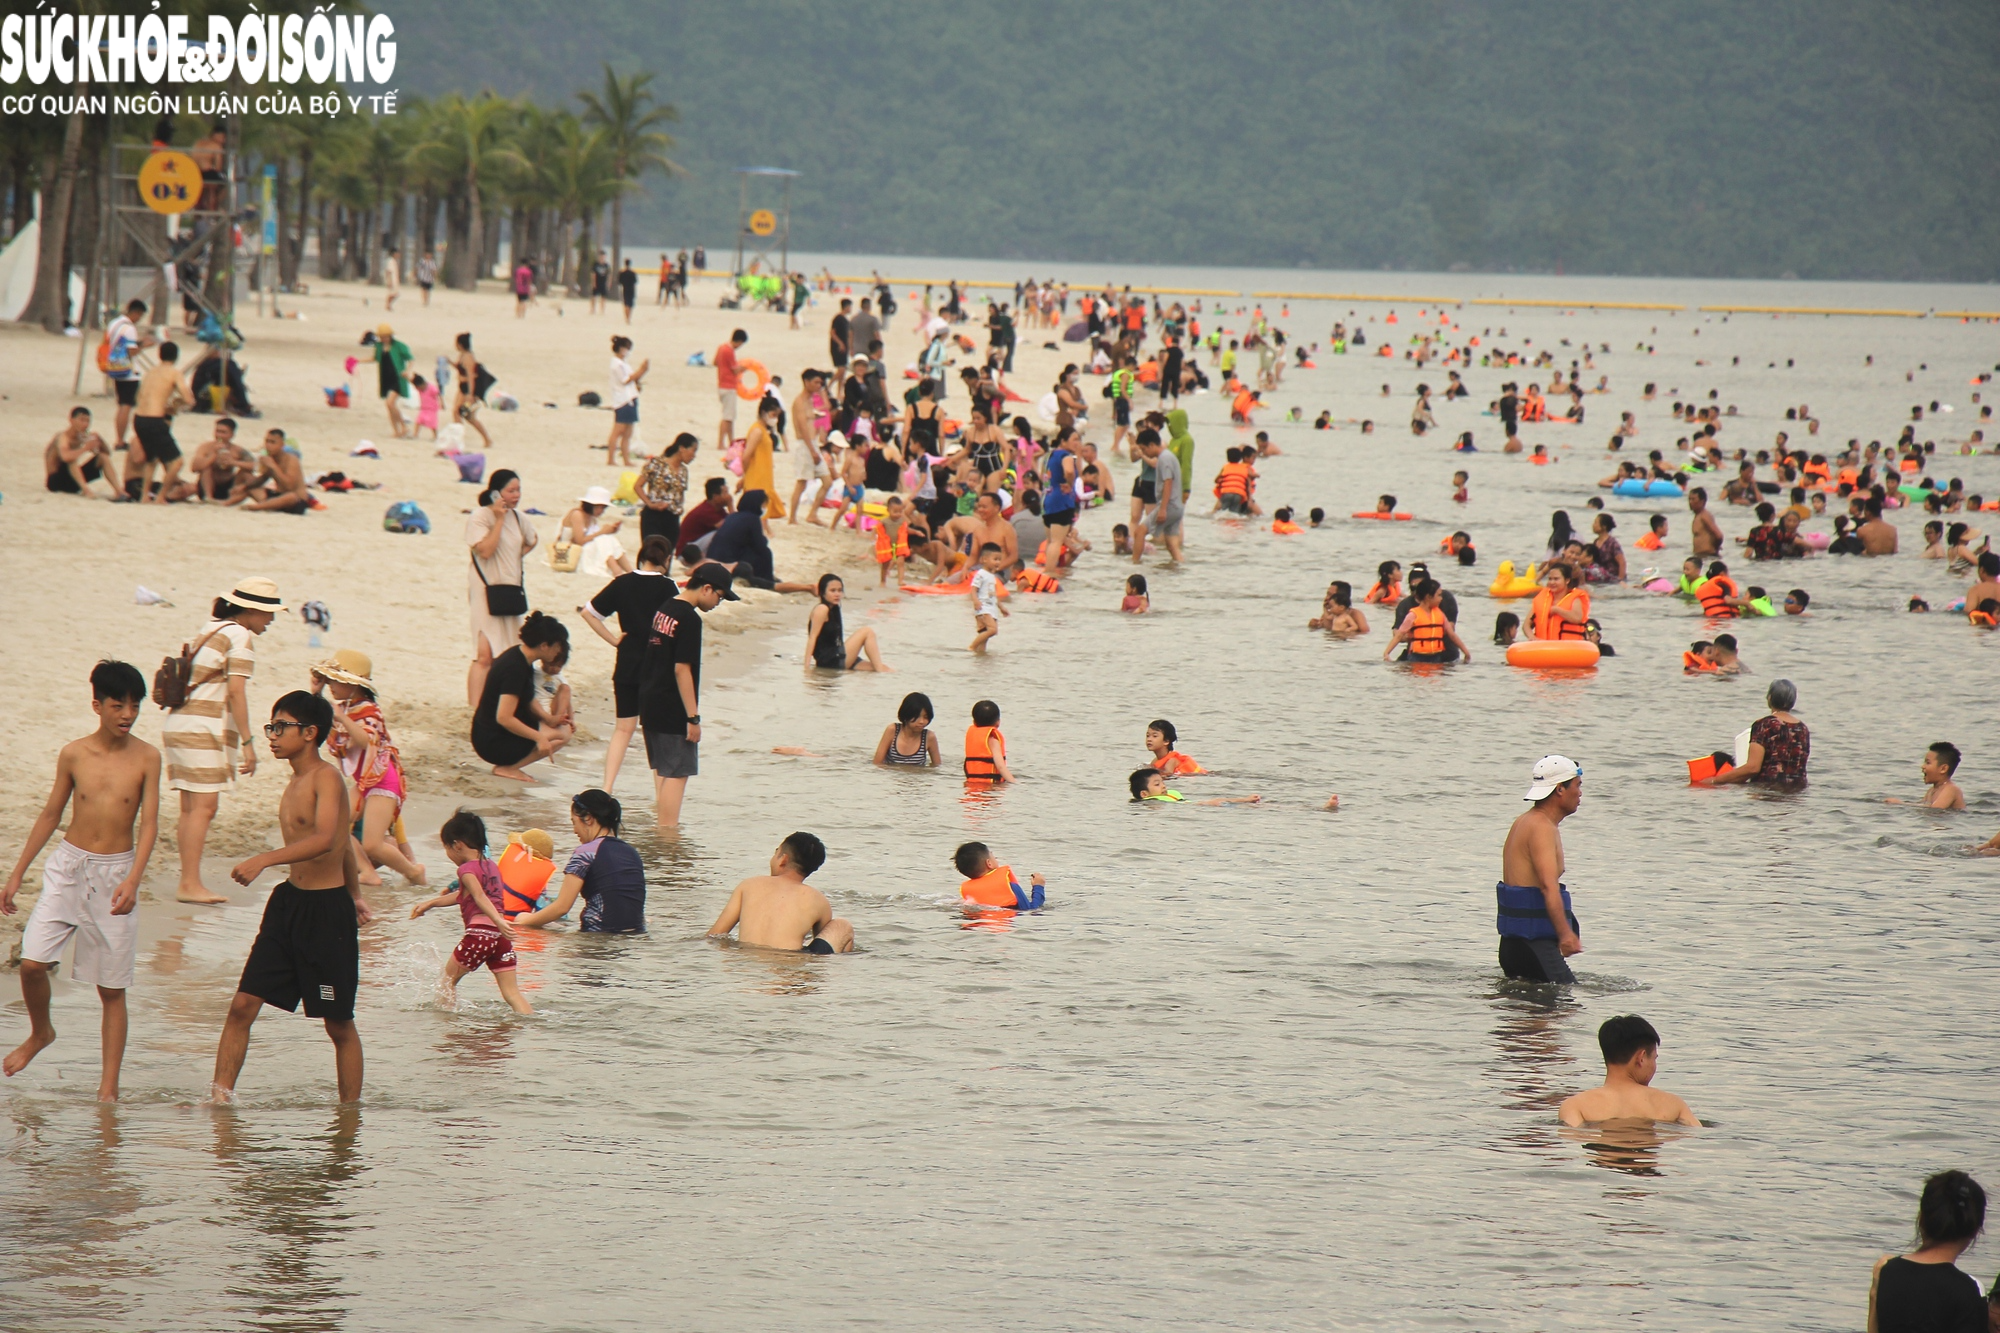 Chùm ảnh, video: Hàng nghìn du khác vô tư check in, tắm biển ở Hạ Long trước khi bão về - Ảnh 4.